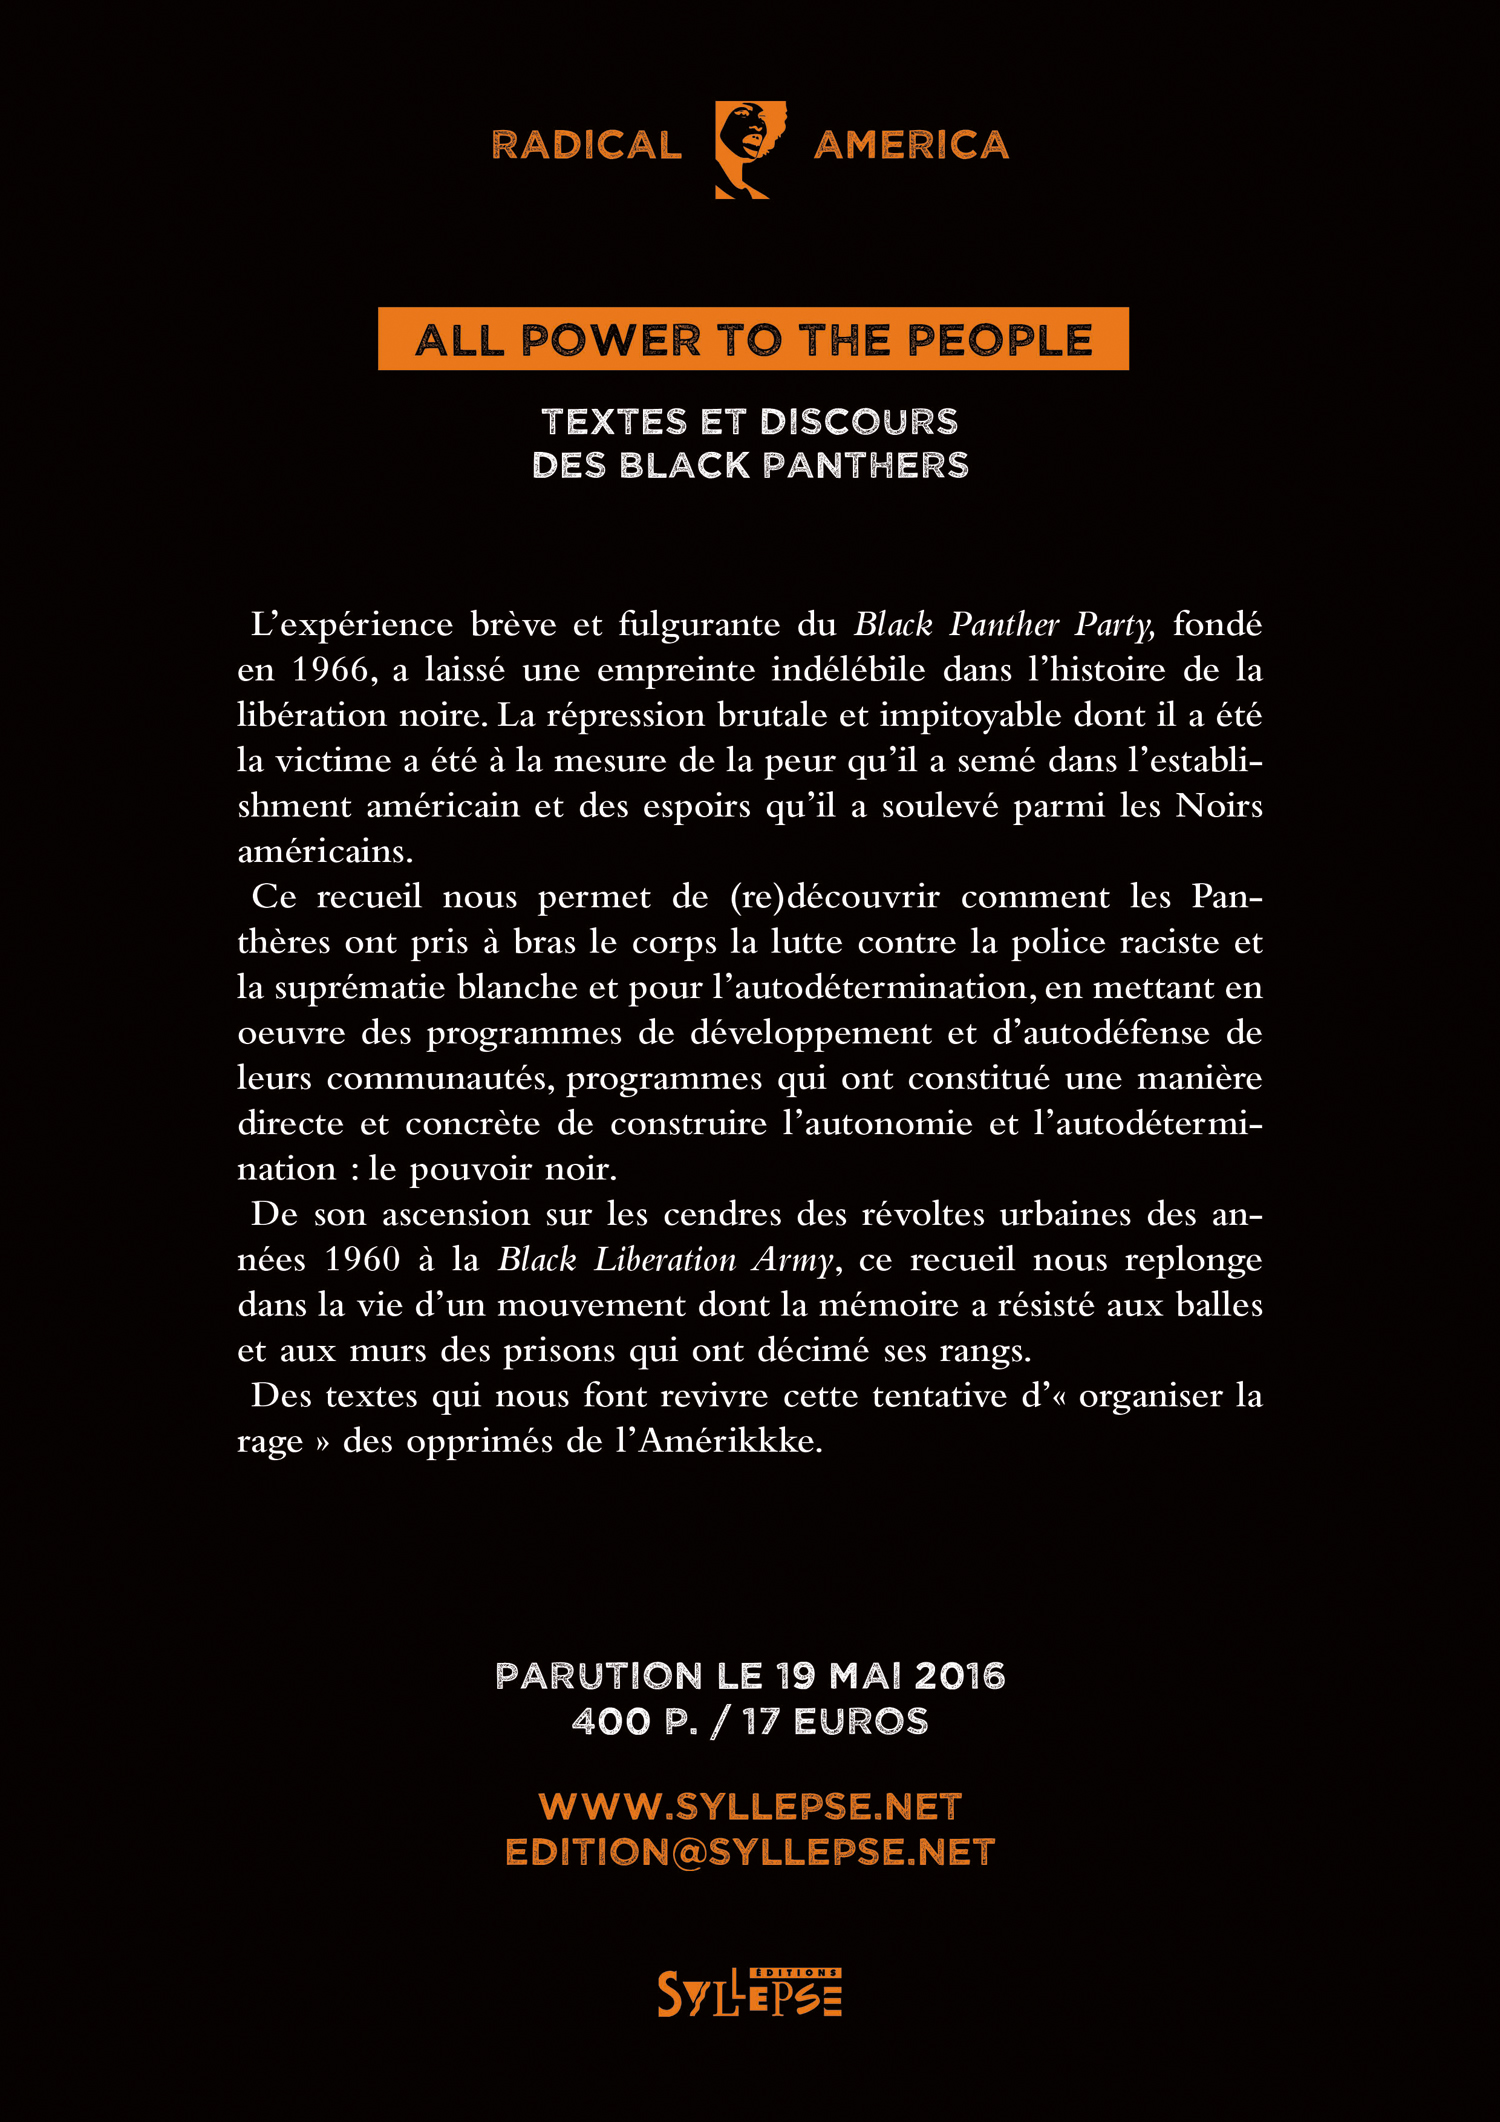 Sortie du livre 'All power to the people - Textes et discours des Black Panthers' le 19 mai 2016